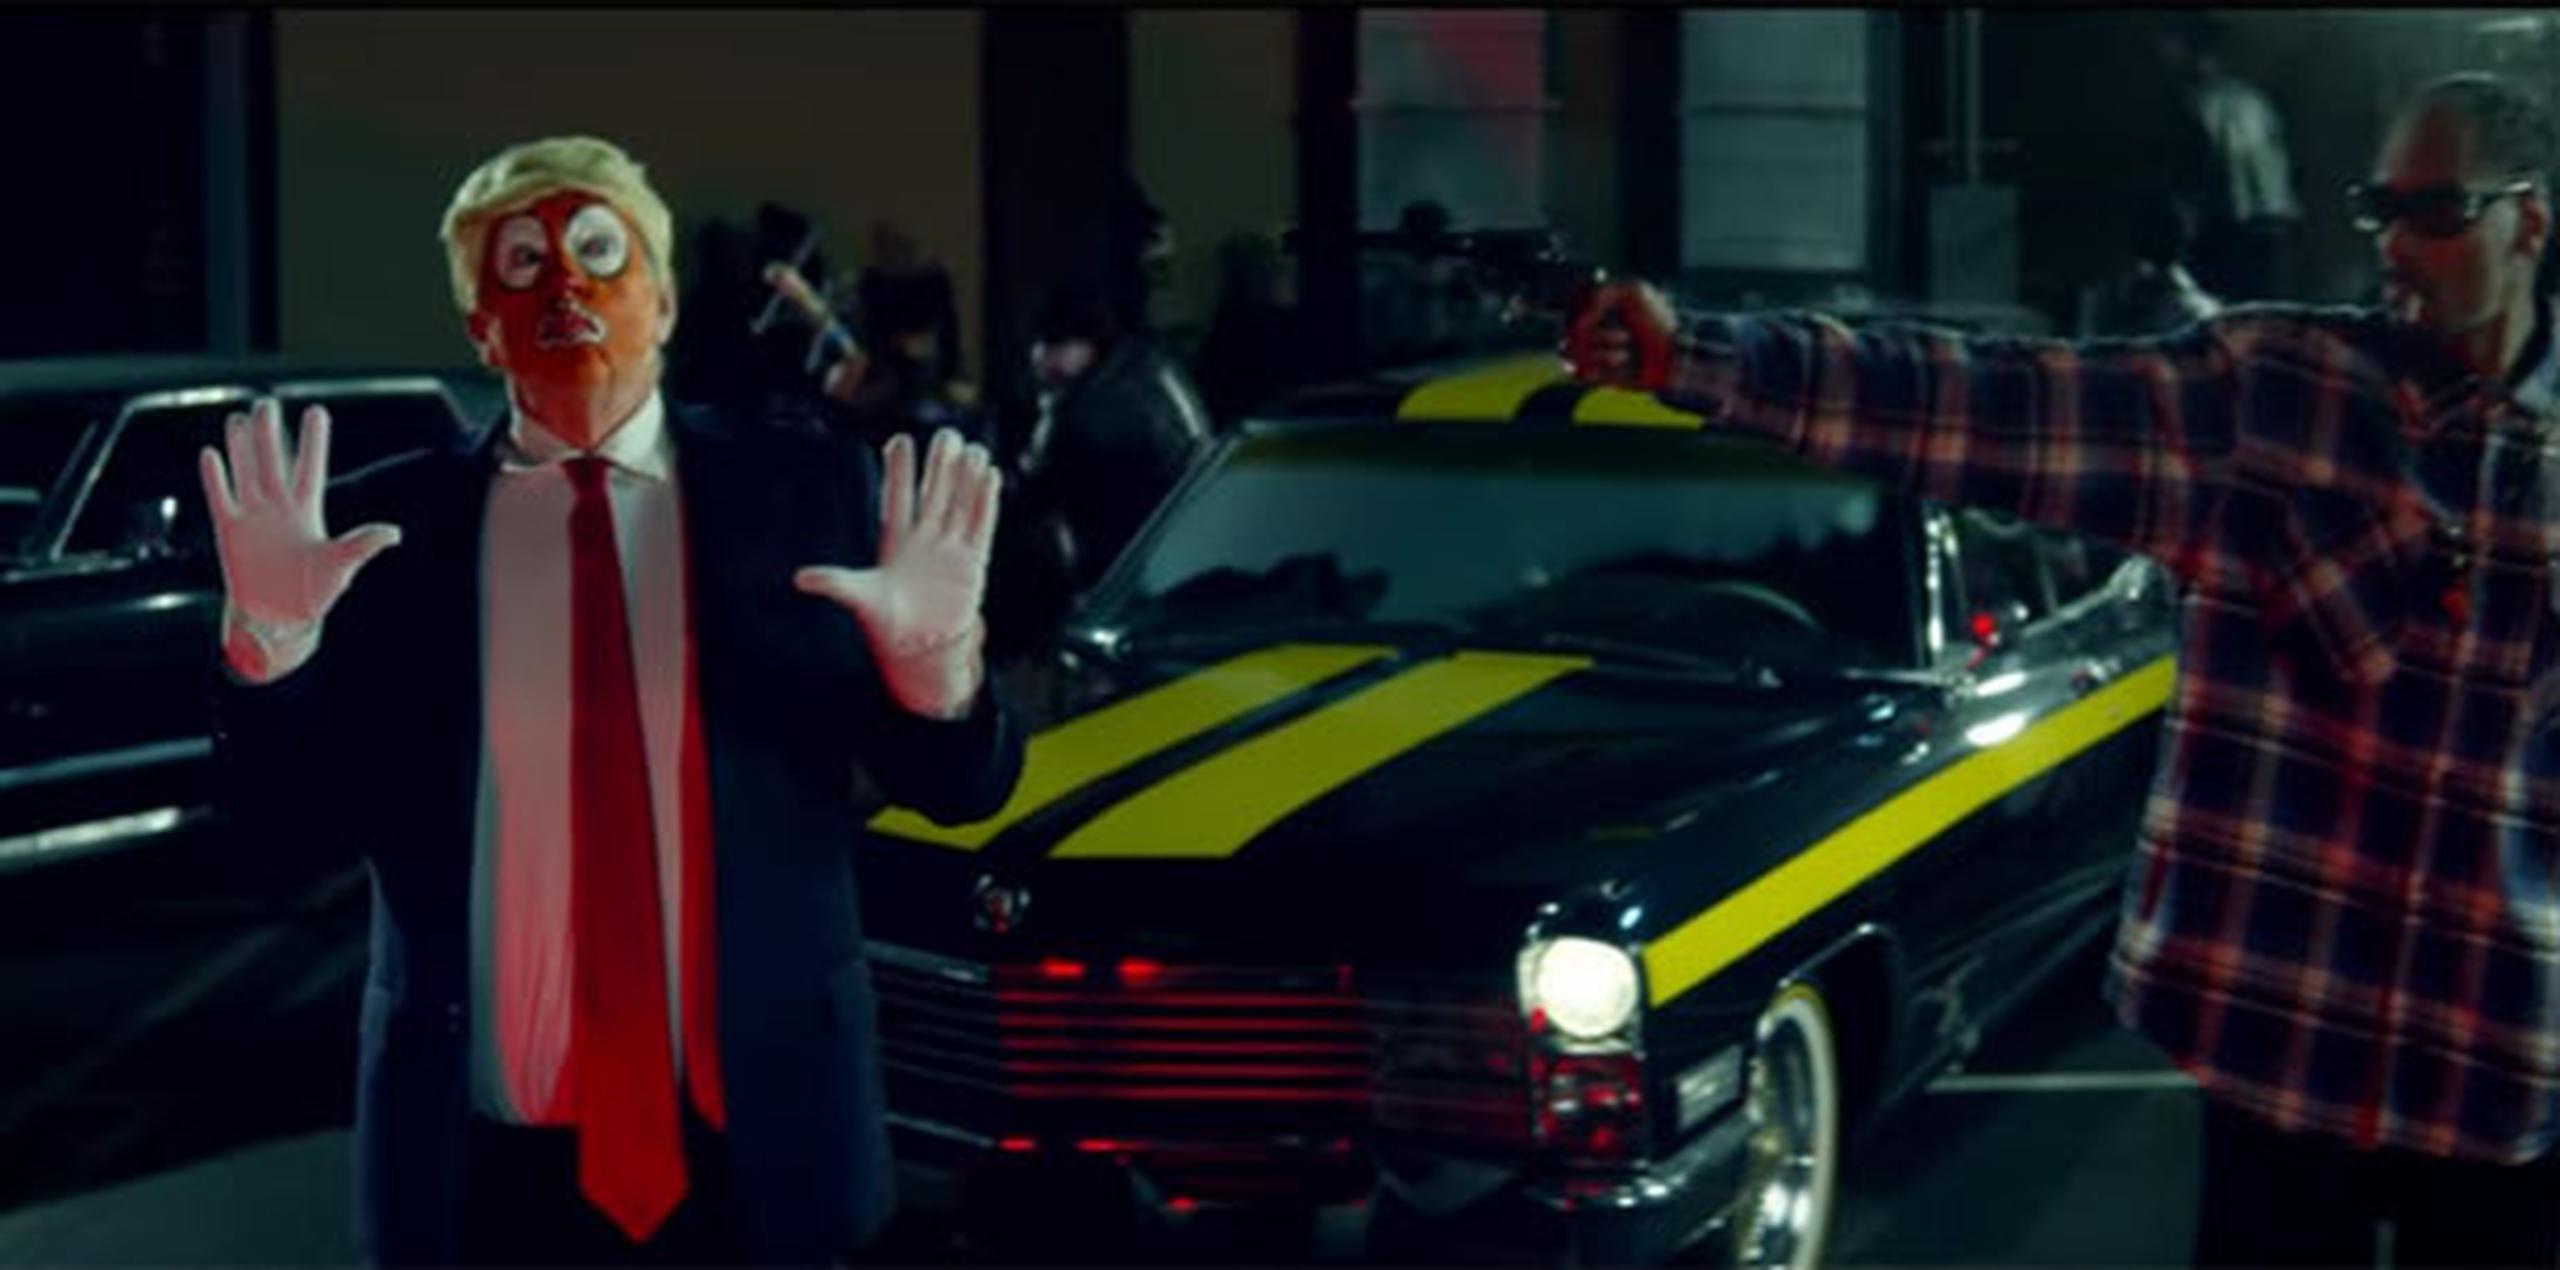 El video es para un remix de la canción "Lavender" del grupo canadiense BADBADNOTGOOD con la participación de Snoop Dogg y Kaytranada. (YouTube)